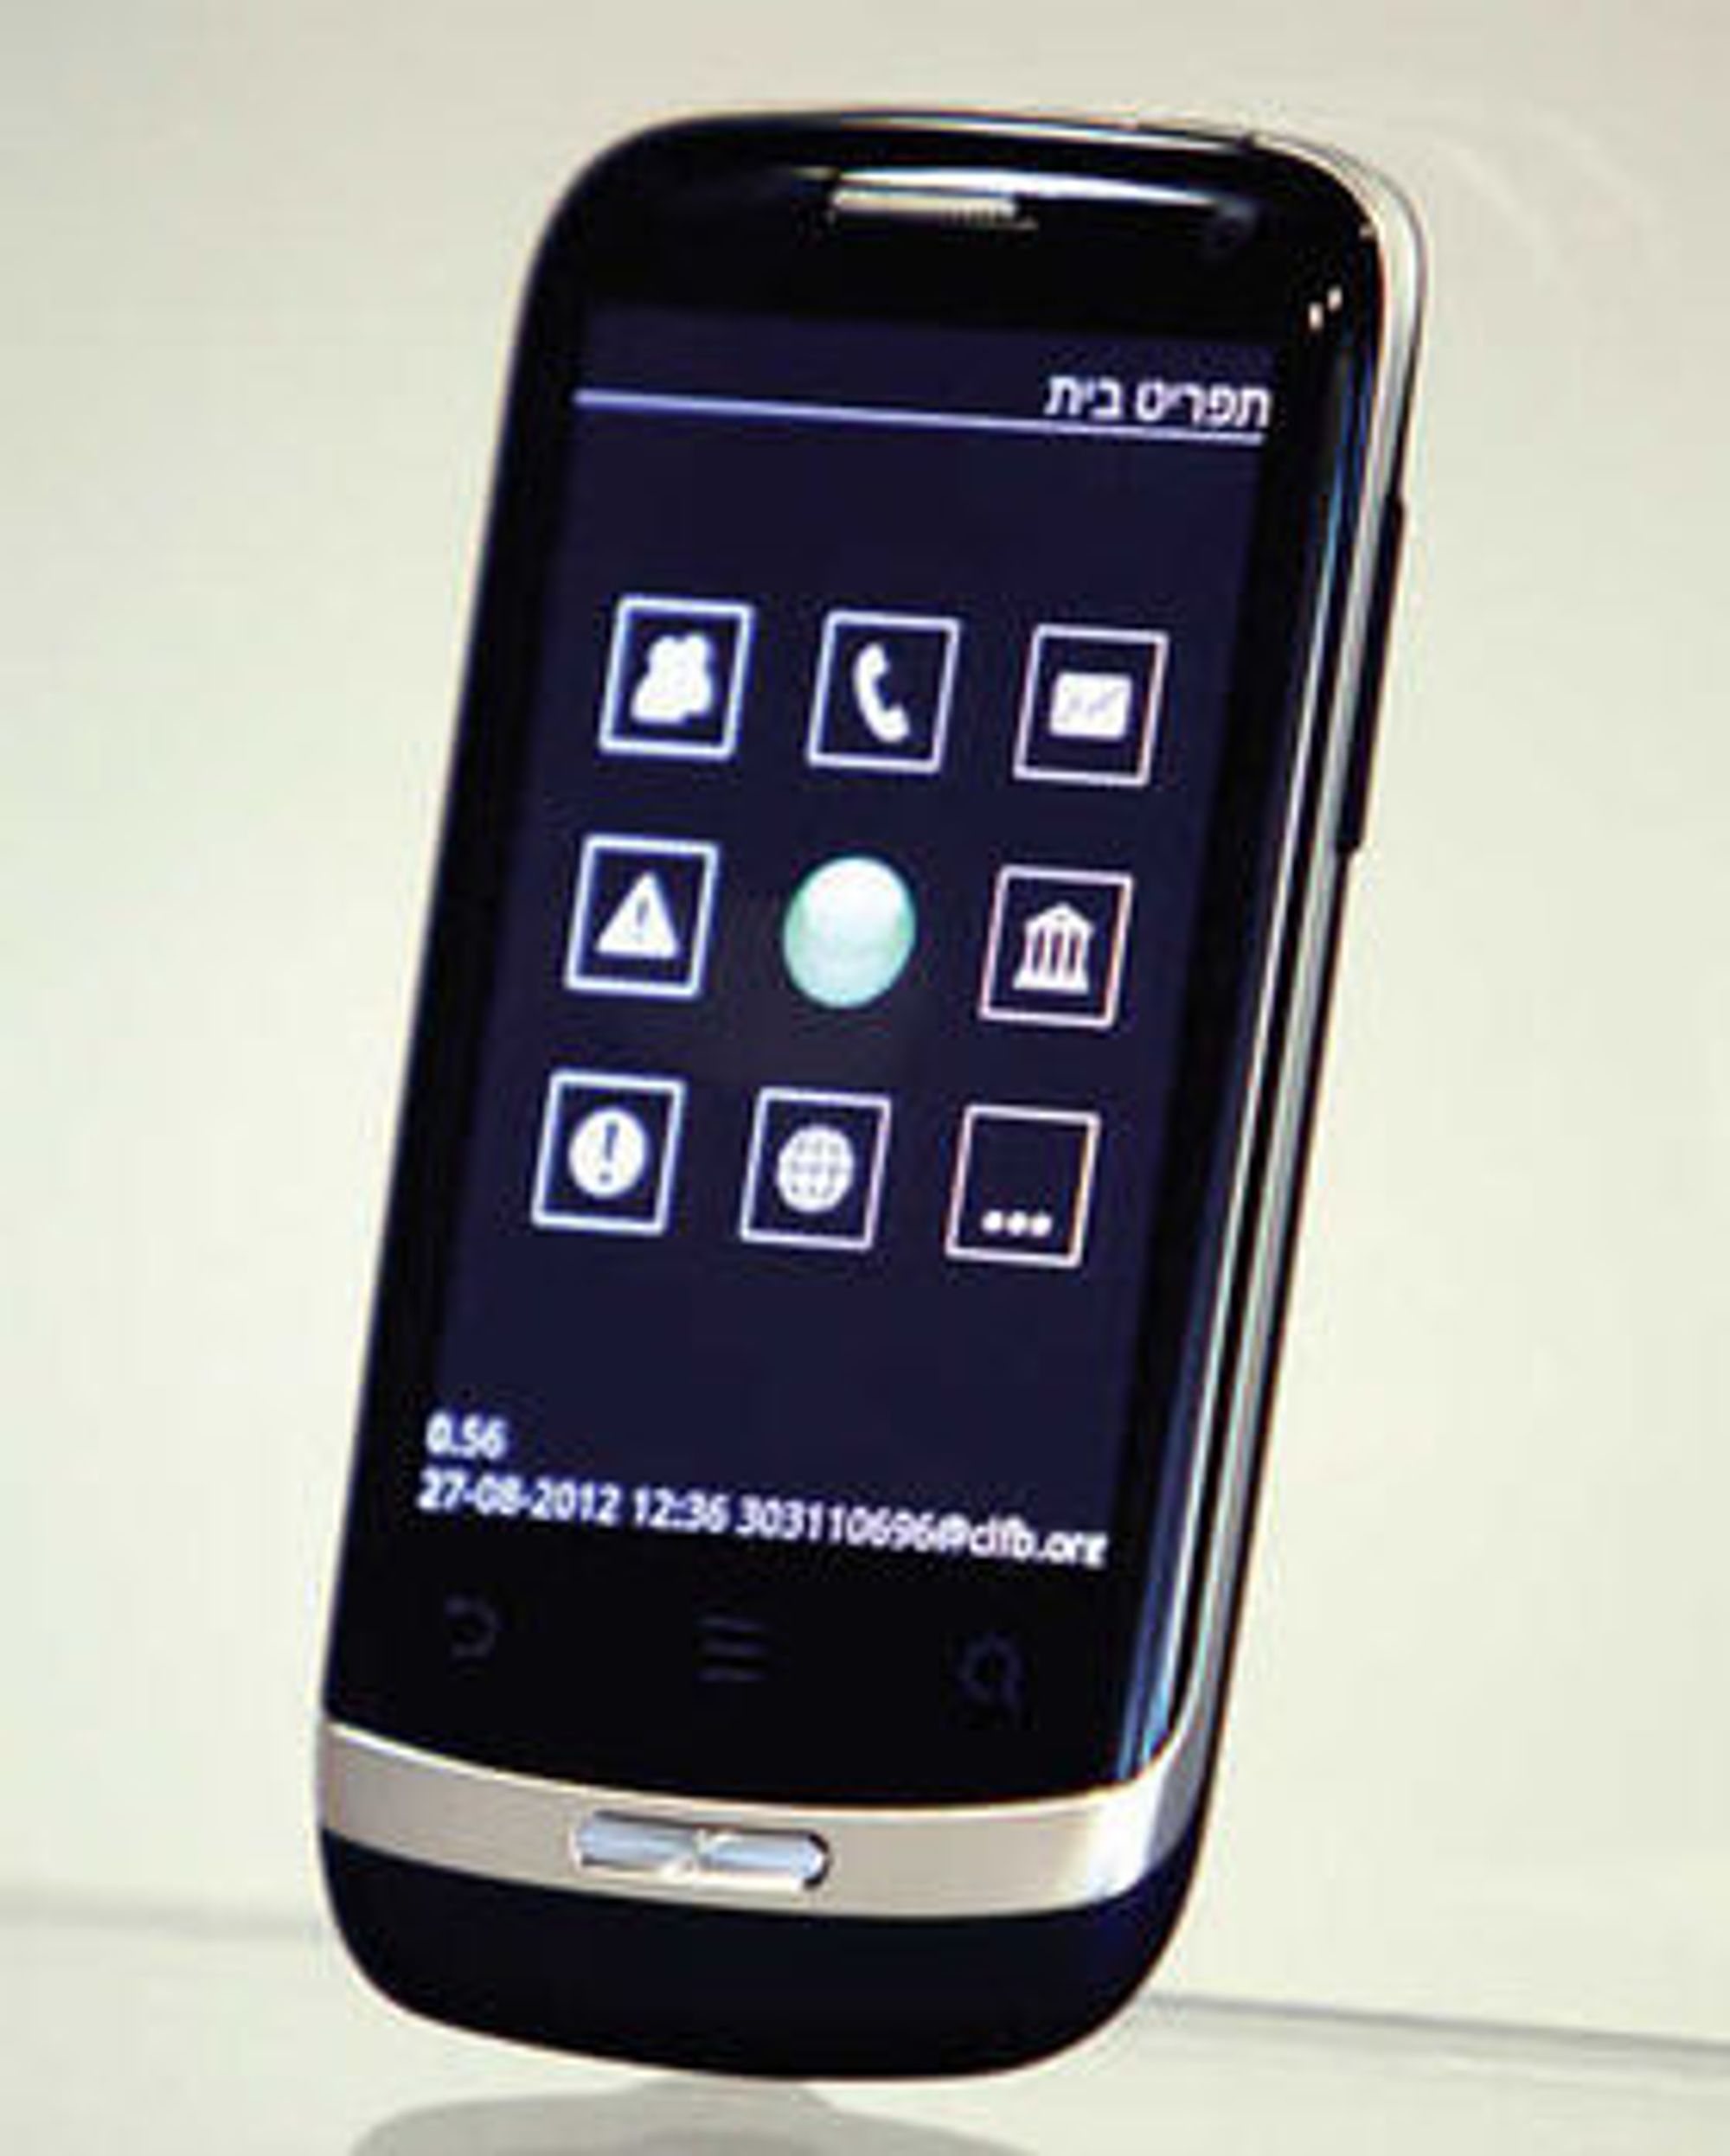 Project Ray-mobilen tilbyr brukergrensesnitt og tjenester som er spesielt tilpasset blinde og svaksynte.